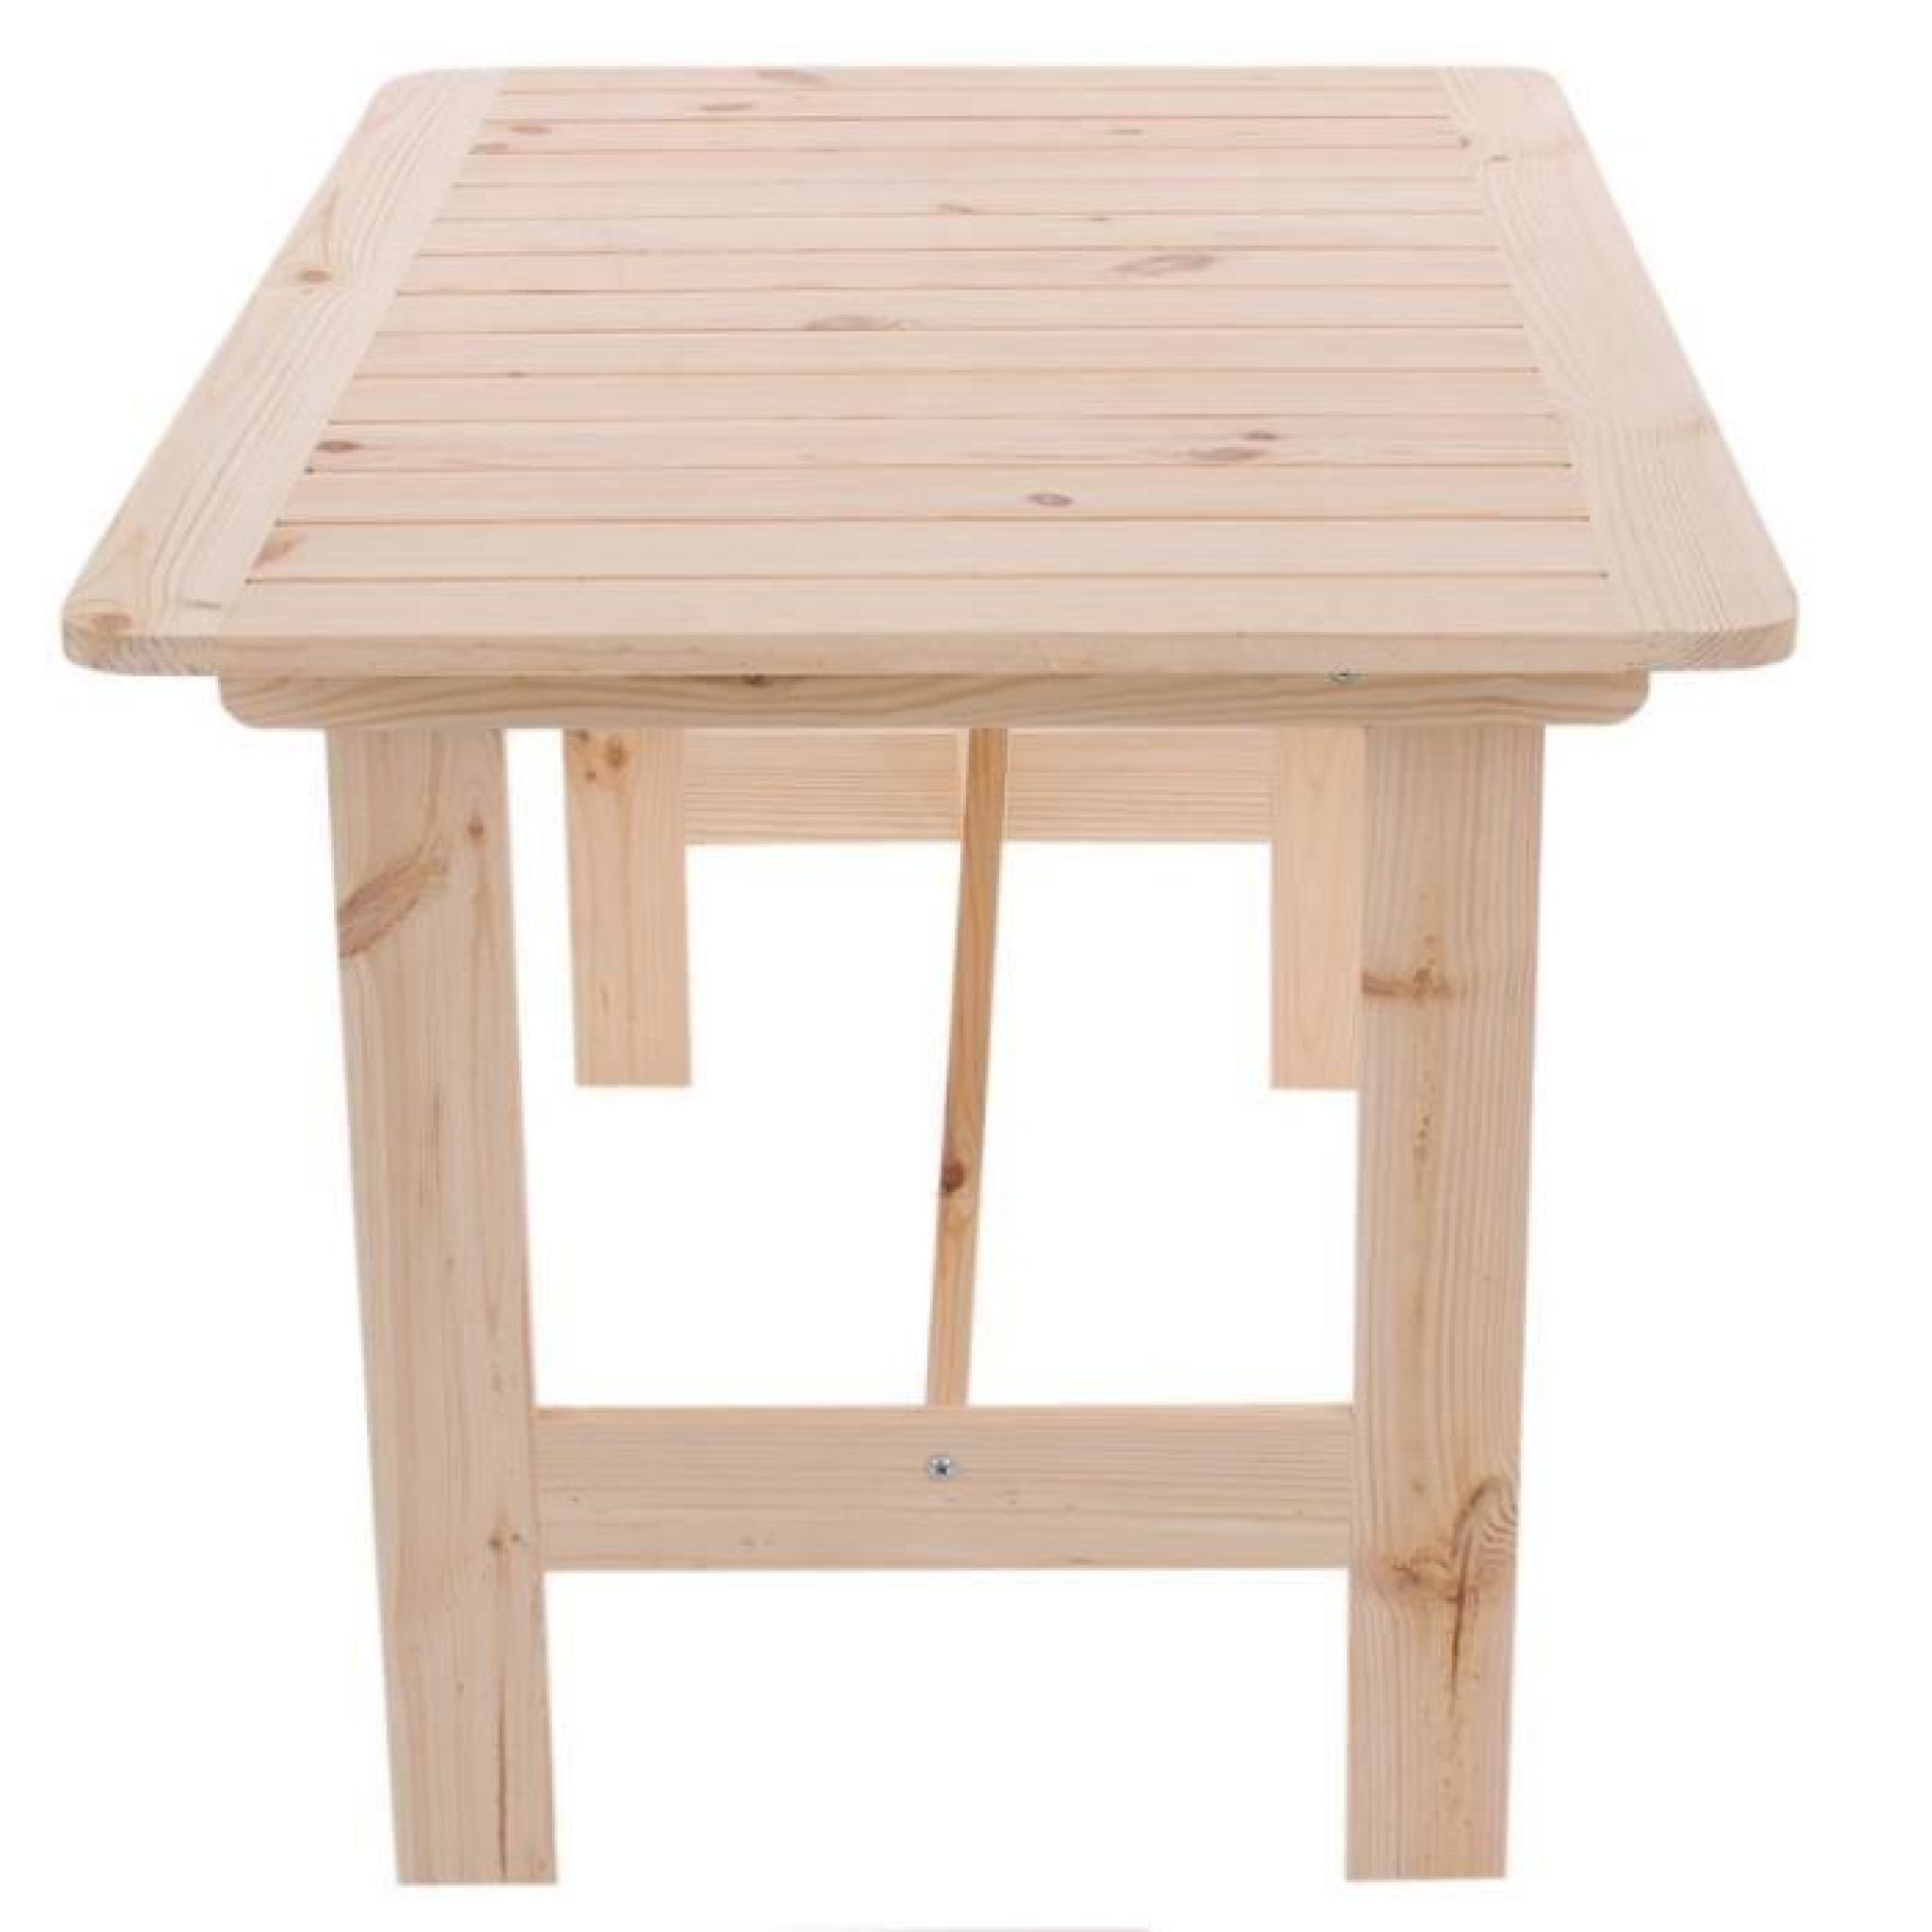 Table de jardin en bois de pin massif 130x80x71cm MDJ04035 pas cher